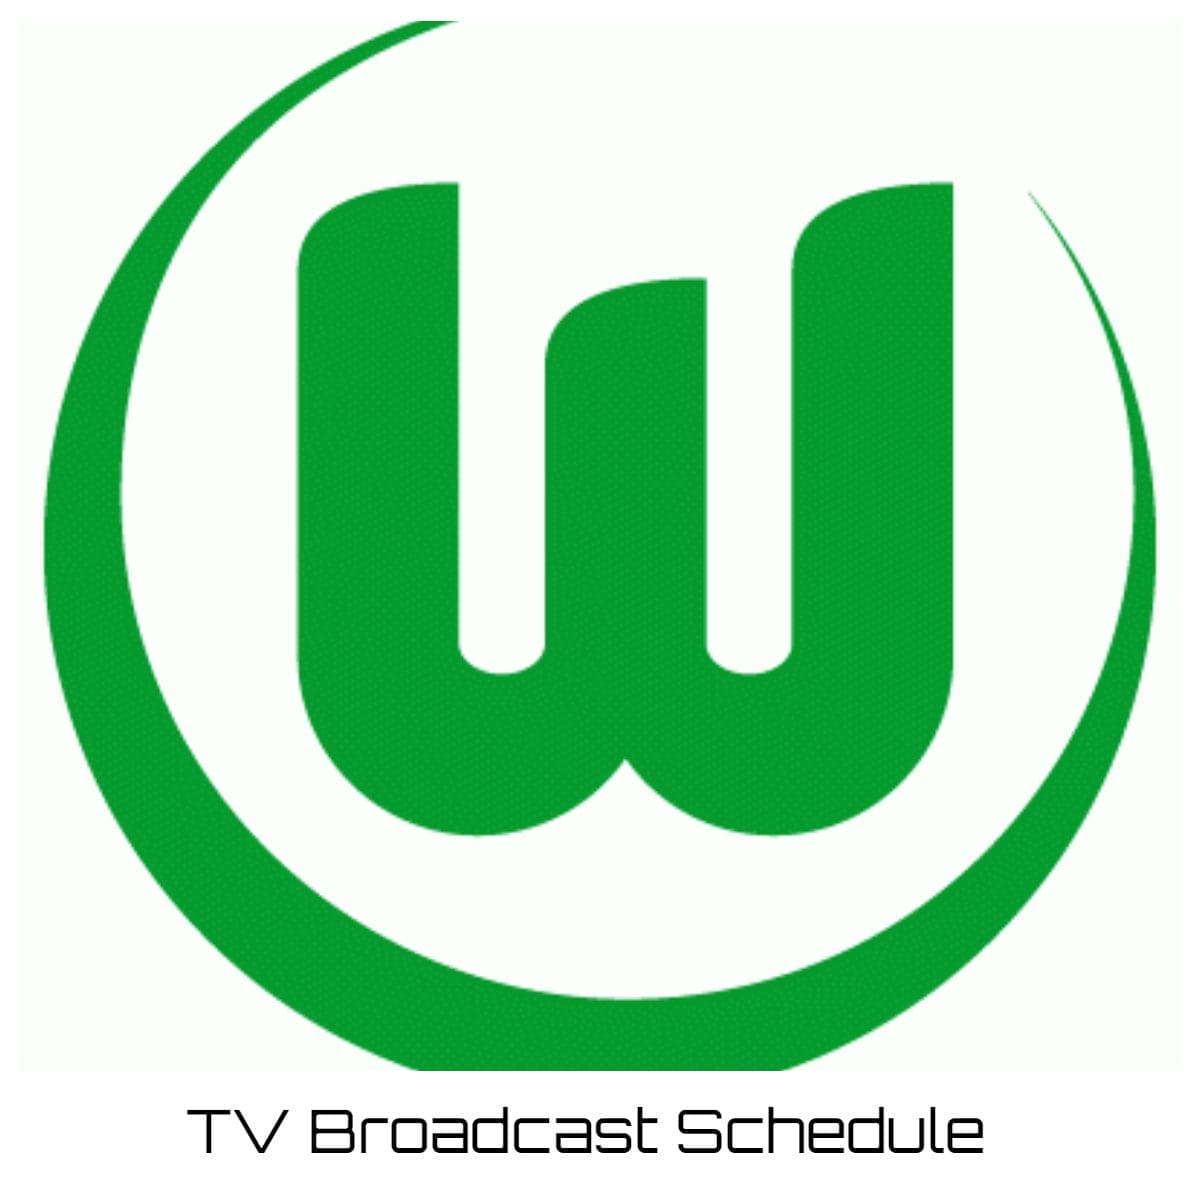 VfL Wolfsburg TV Broadcast Schedule